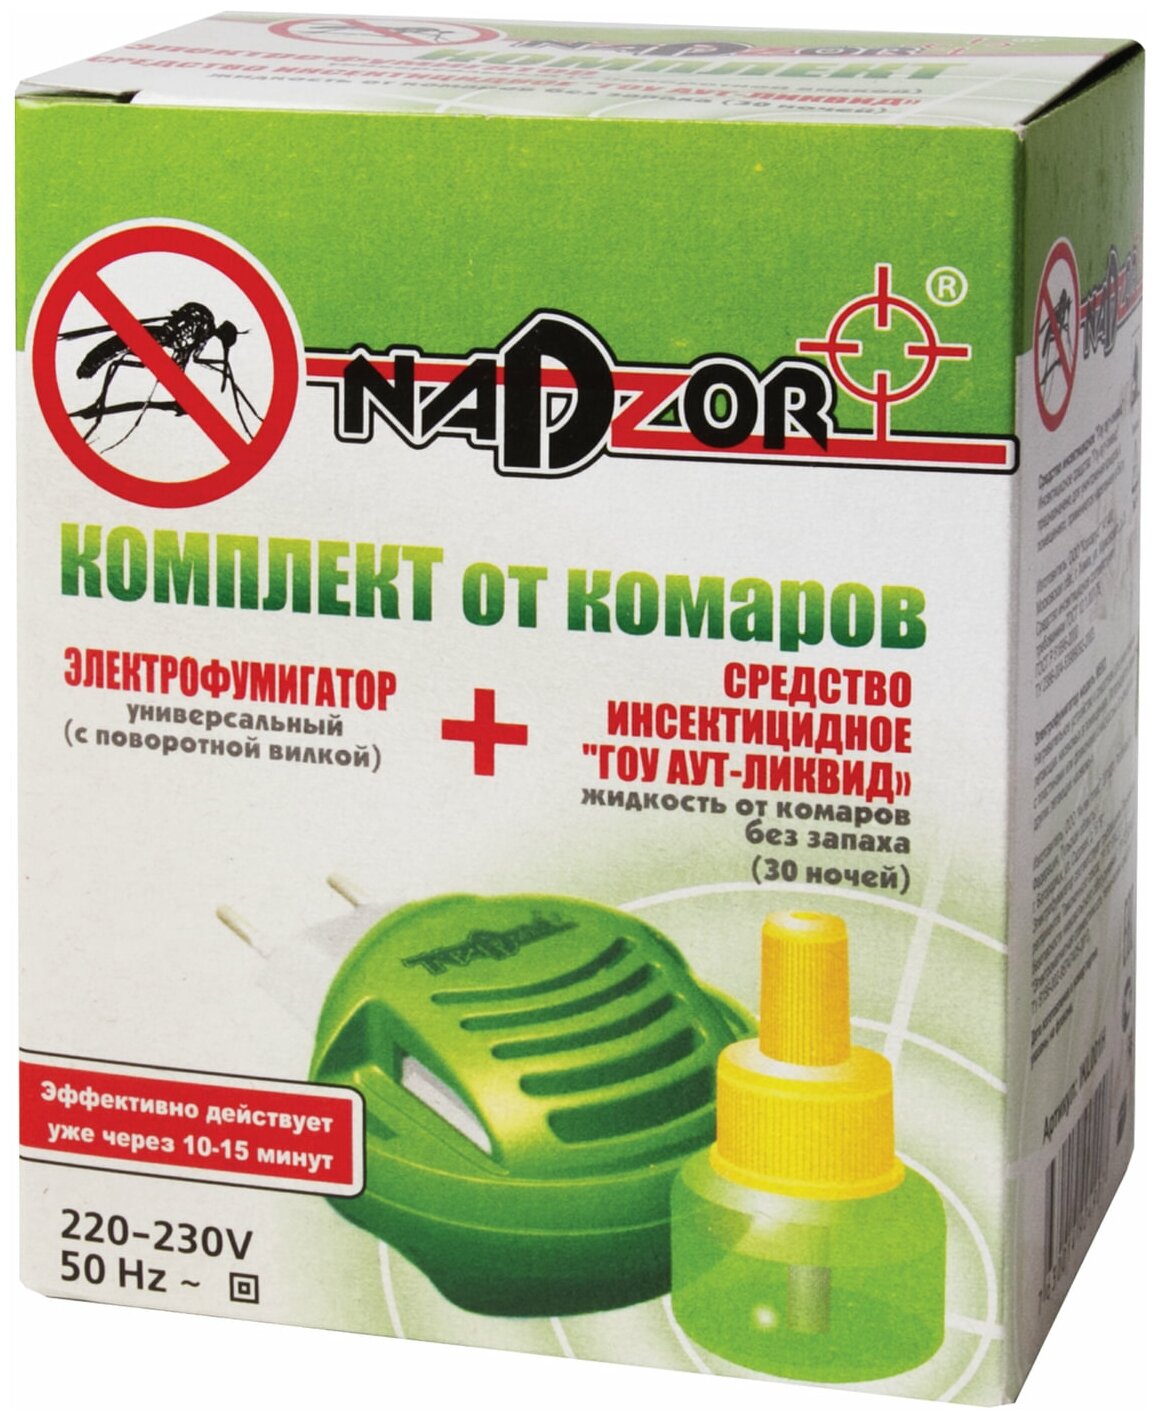 Инсектицид Комплект для уничтожения комаров NADZOR жидкость на 30 ночей и универсальный электрофумигатор арт.IKL001H (ст.24) - фотография № 2